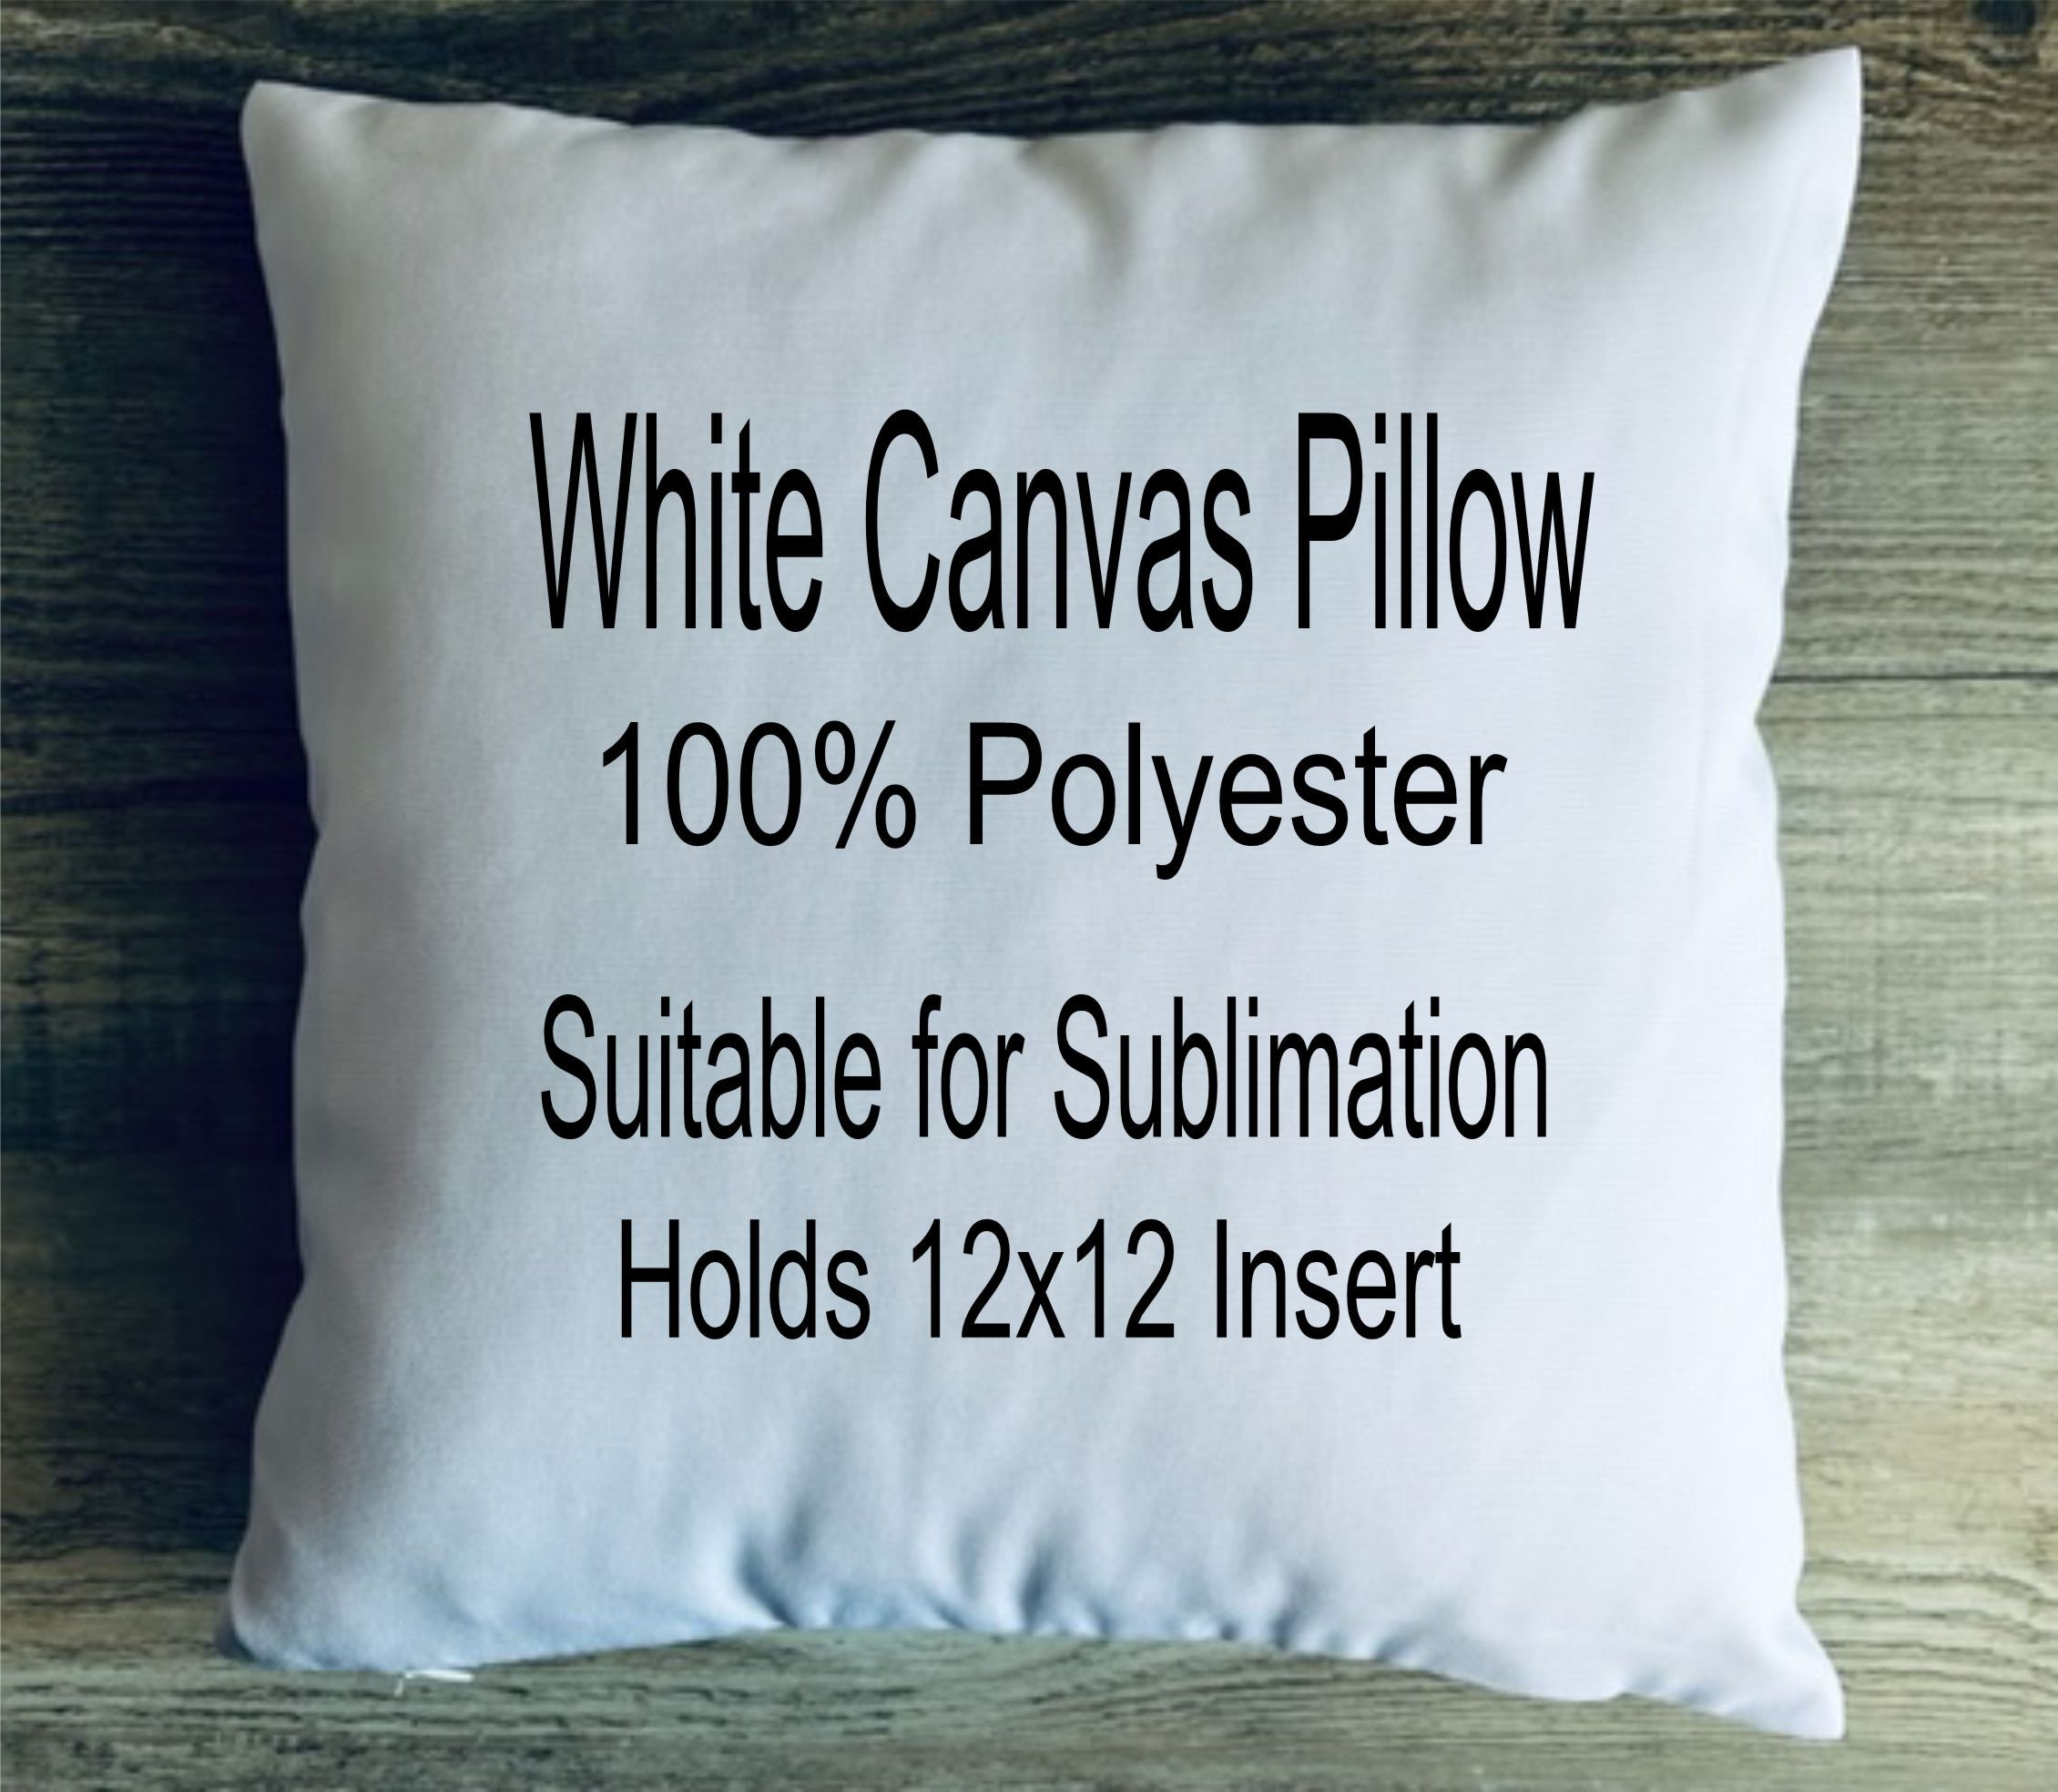 Synthetic pillow insert 12x16 14x14 16x16 18x18 20x20 22x22 24x24 26x26  28x28 Euro form polyester pillow insert Outdoor pillow insert